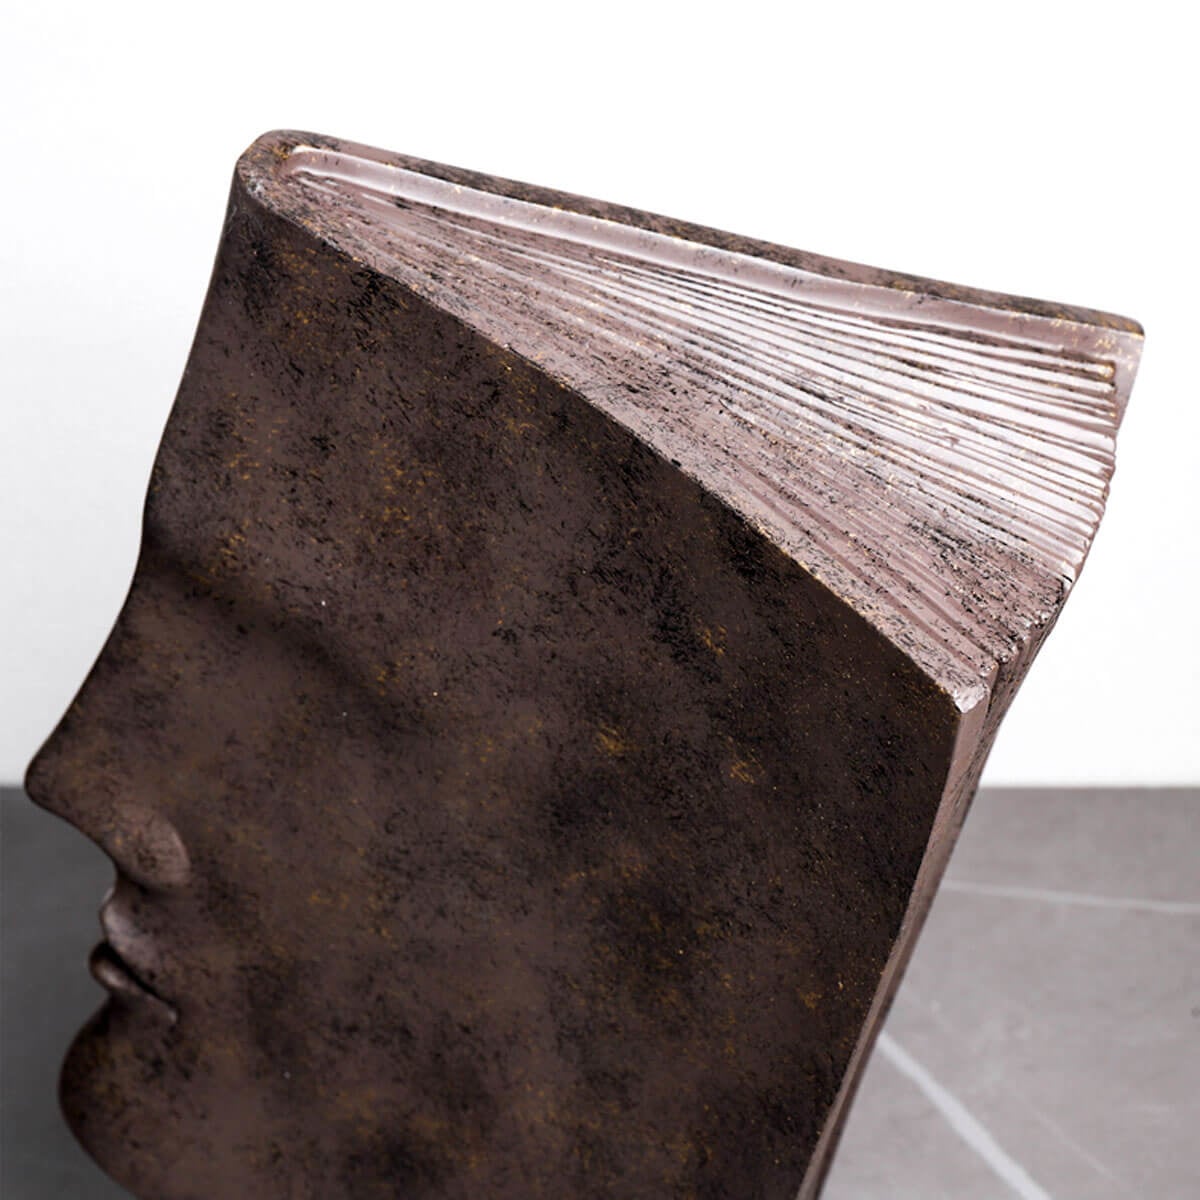 Book Face Figures Resin Abstract Art Sculpture